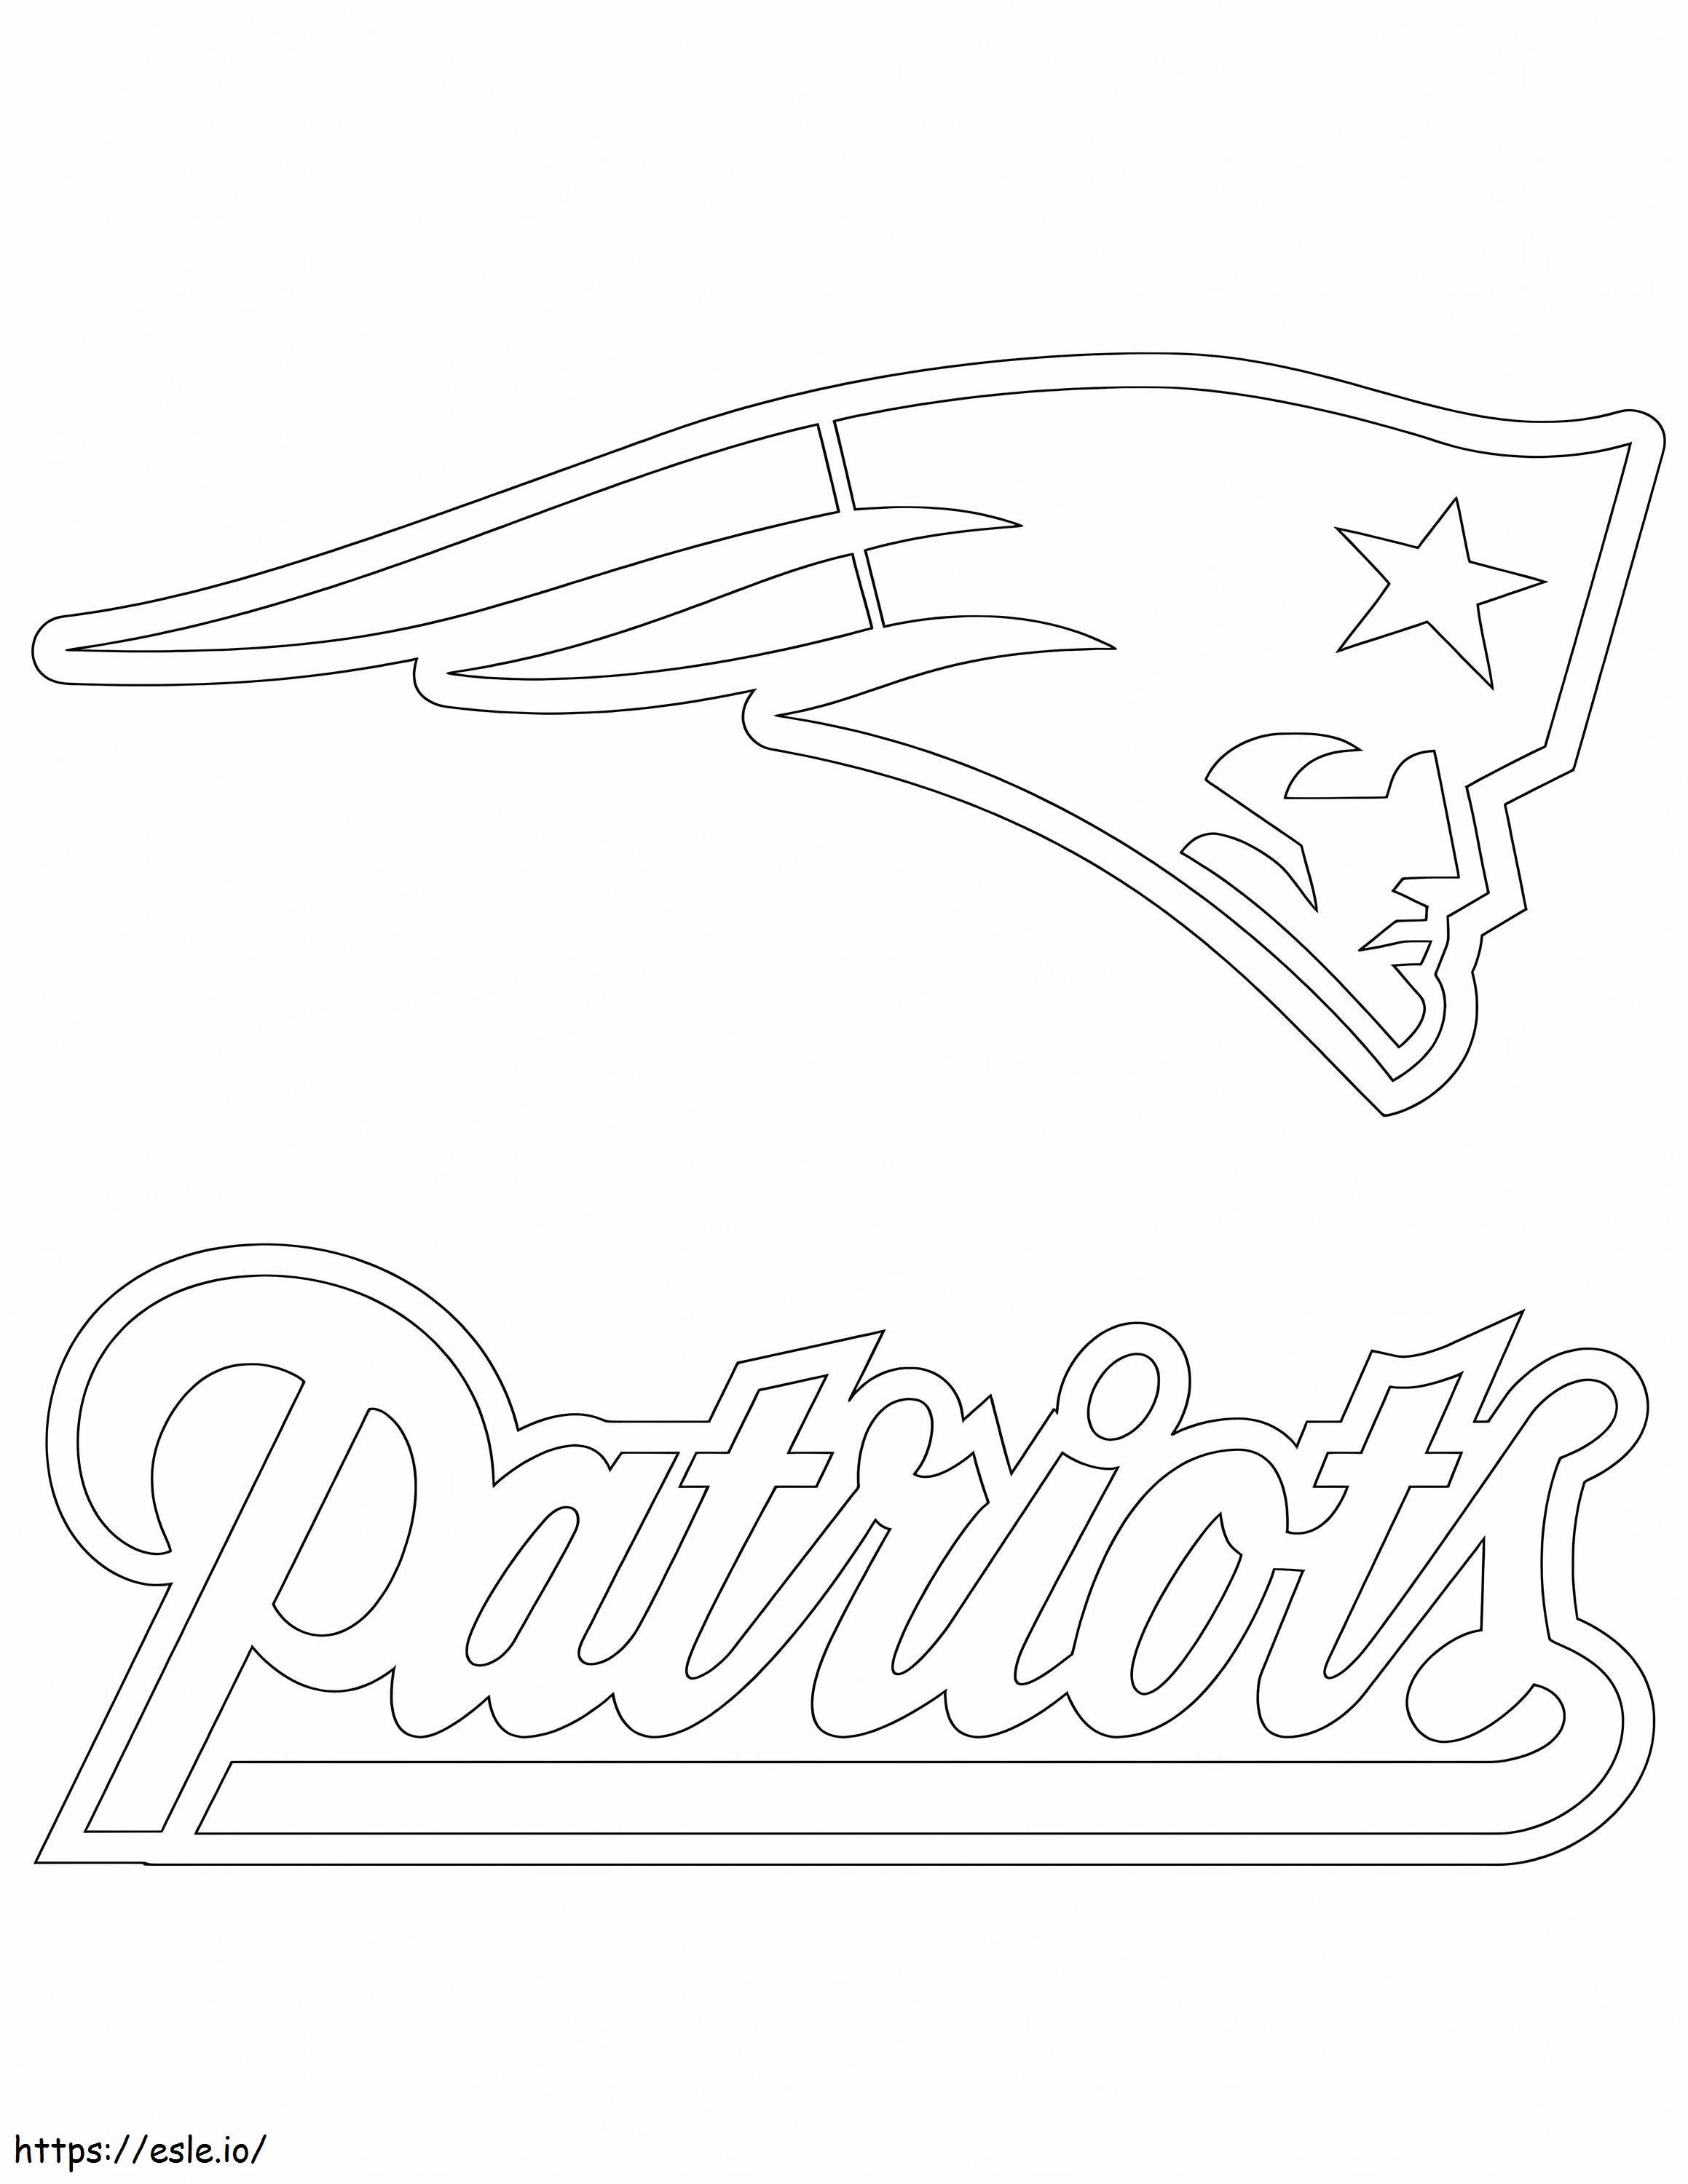 1576916688 Logo der New England Patriots ausmalbilder